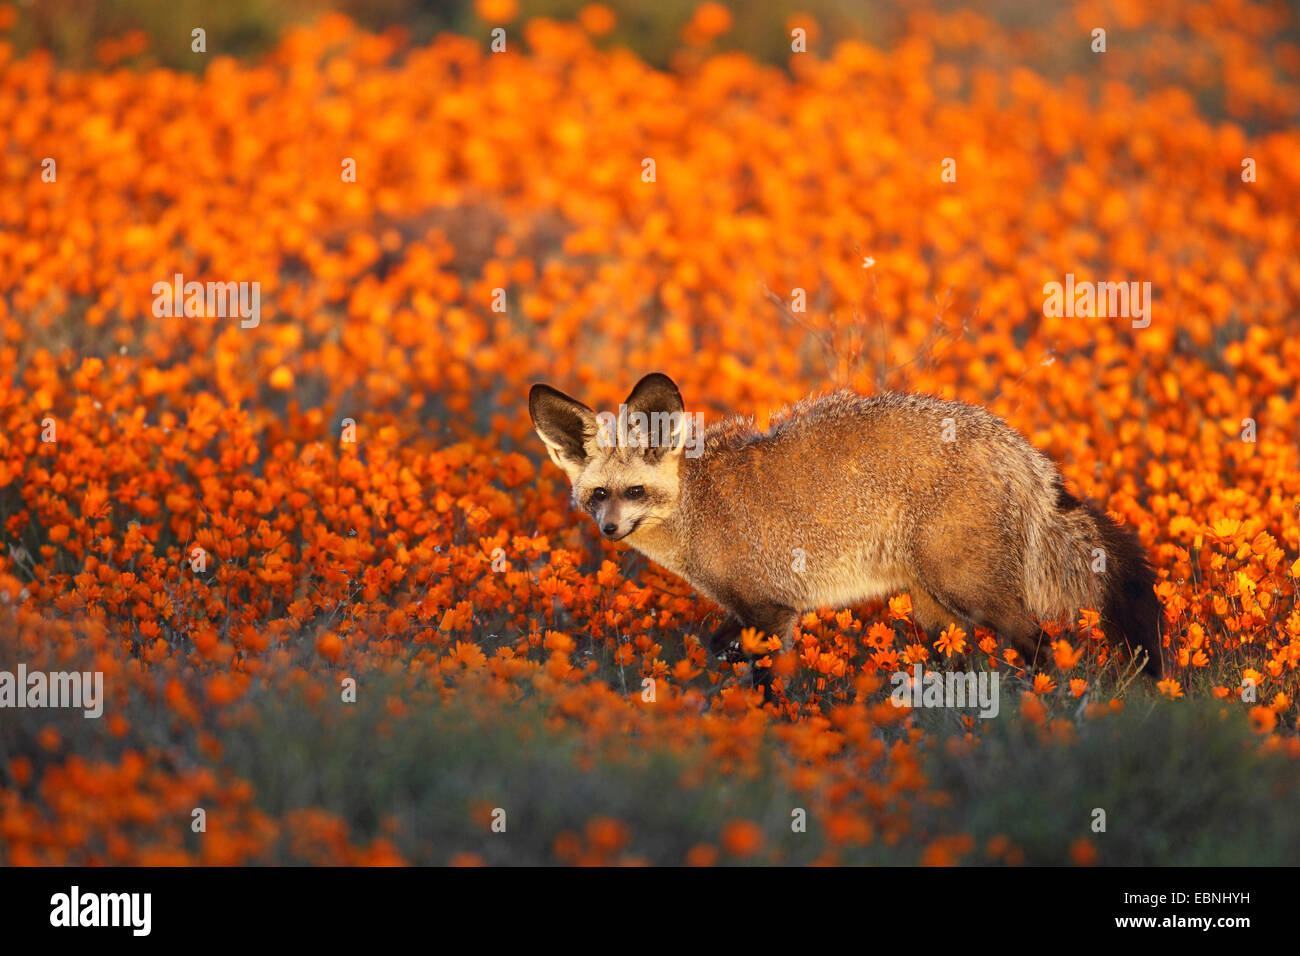 Hieb-eared Fuchs (Otocyon Megalotis), sucht nach Essen auf einer Wiese des Daisys, Südafrika, Namaqua Nationalparks Stockfoto